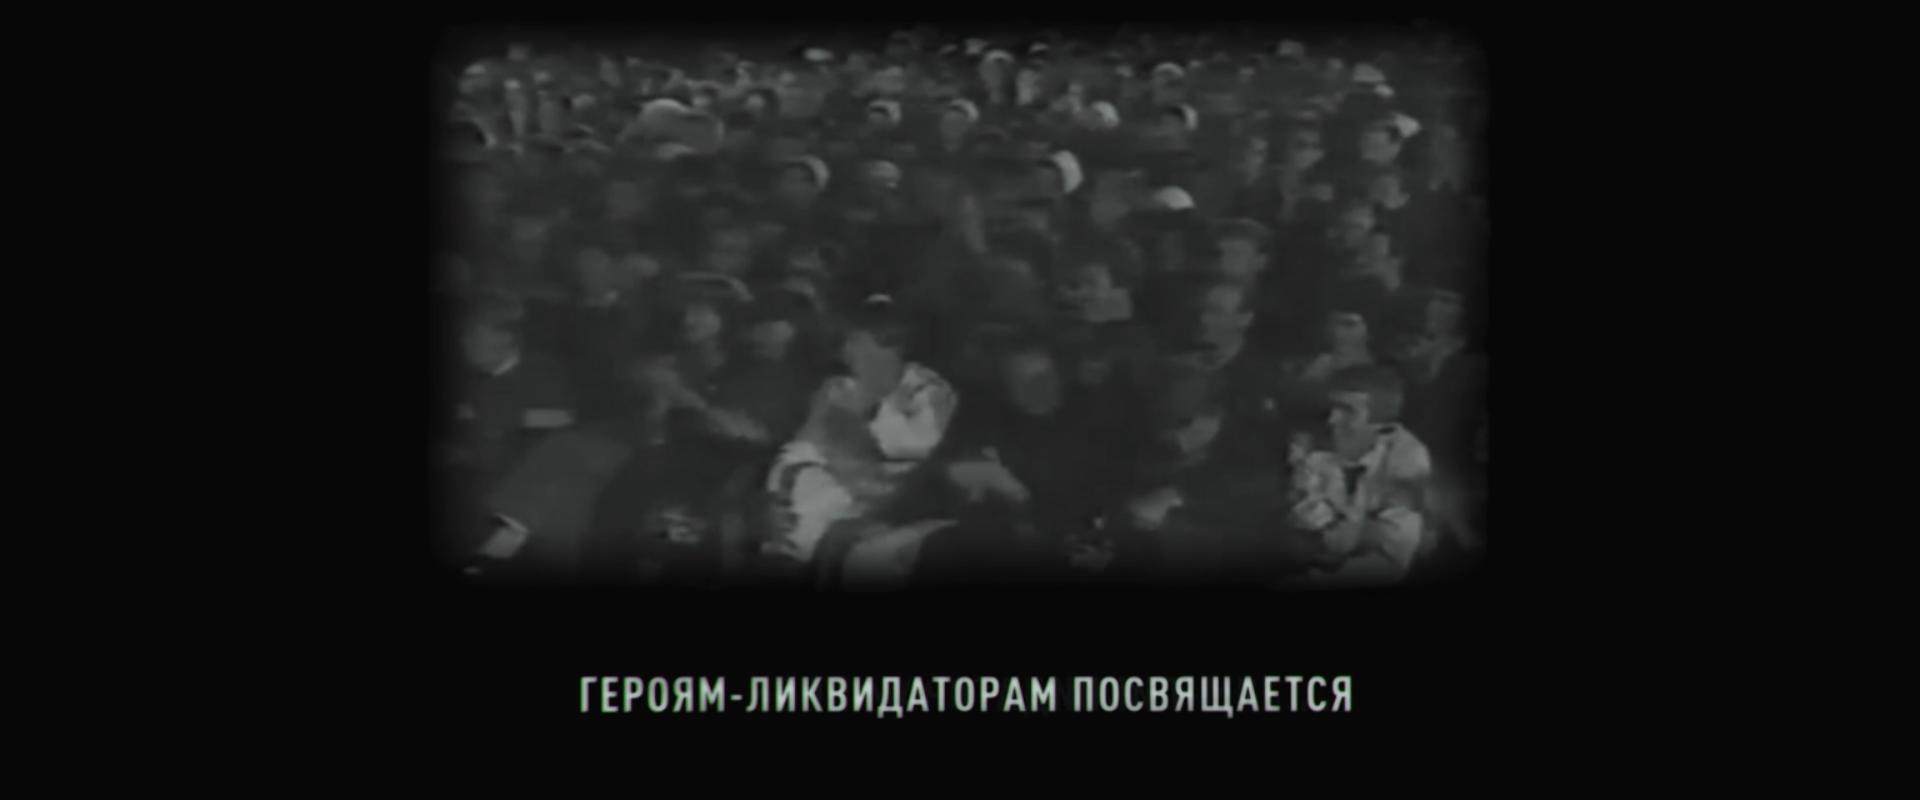 Tchernobyl TV Short 2009